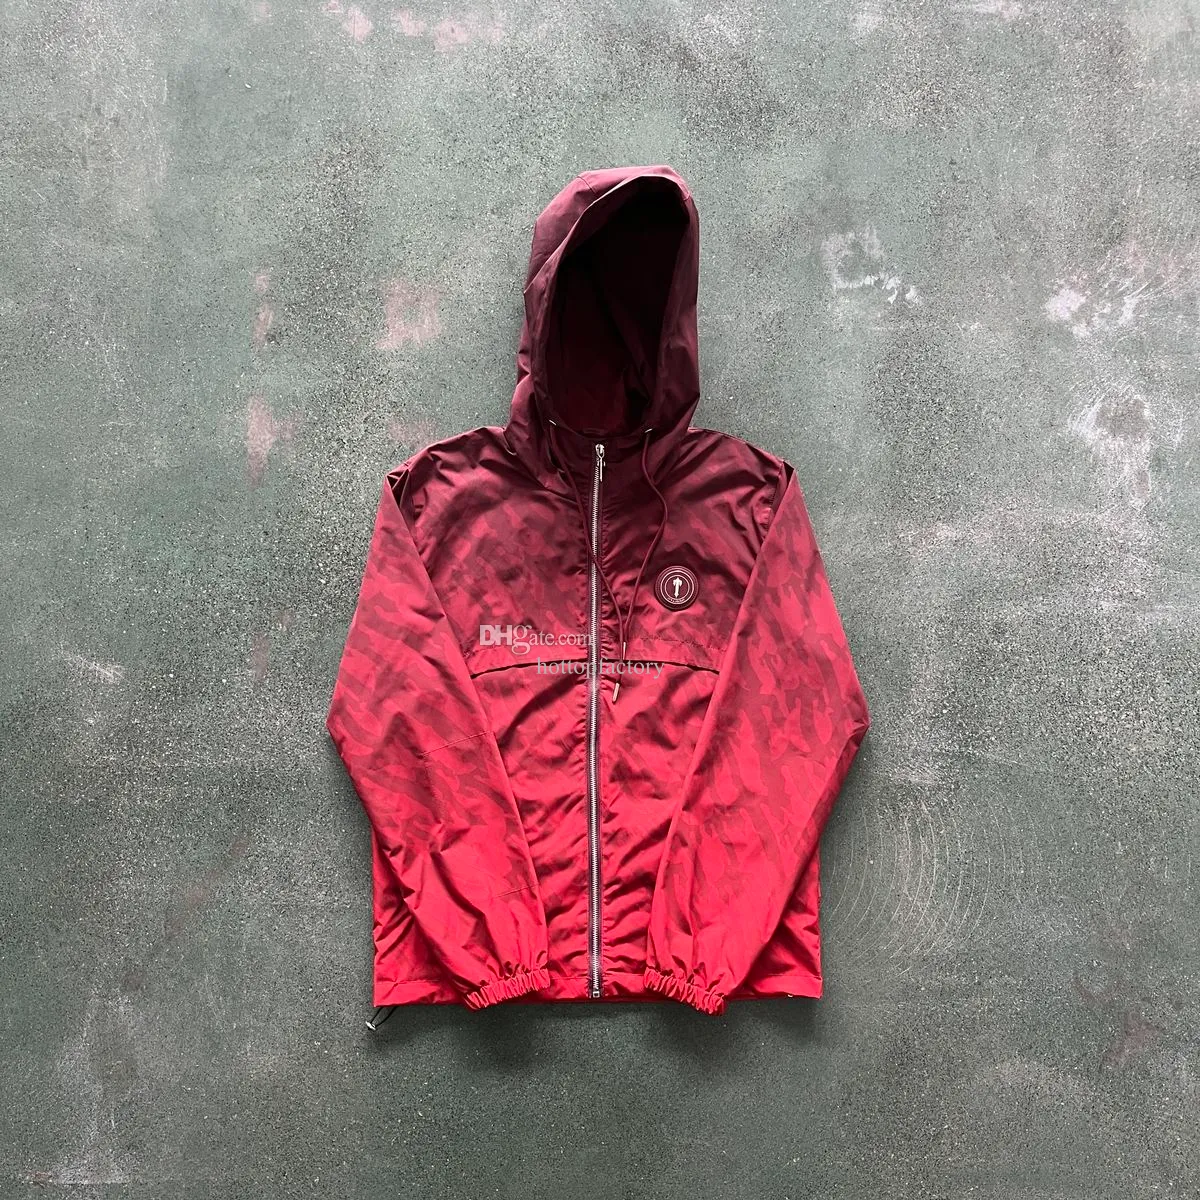 뜨거운 판매 트랩 스타 재킷 mens 까마귀 코트 화질 여자 코트 EU 크기 xsxl에 irongate t winrbreaker 빨간색